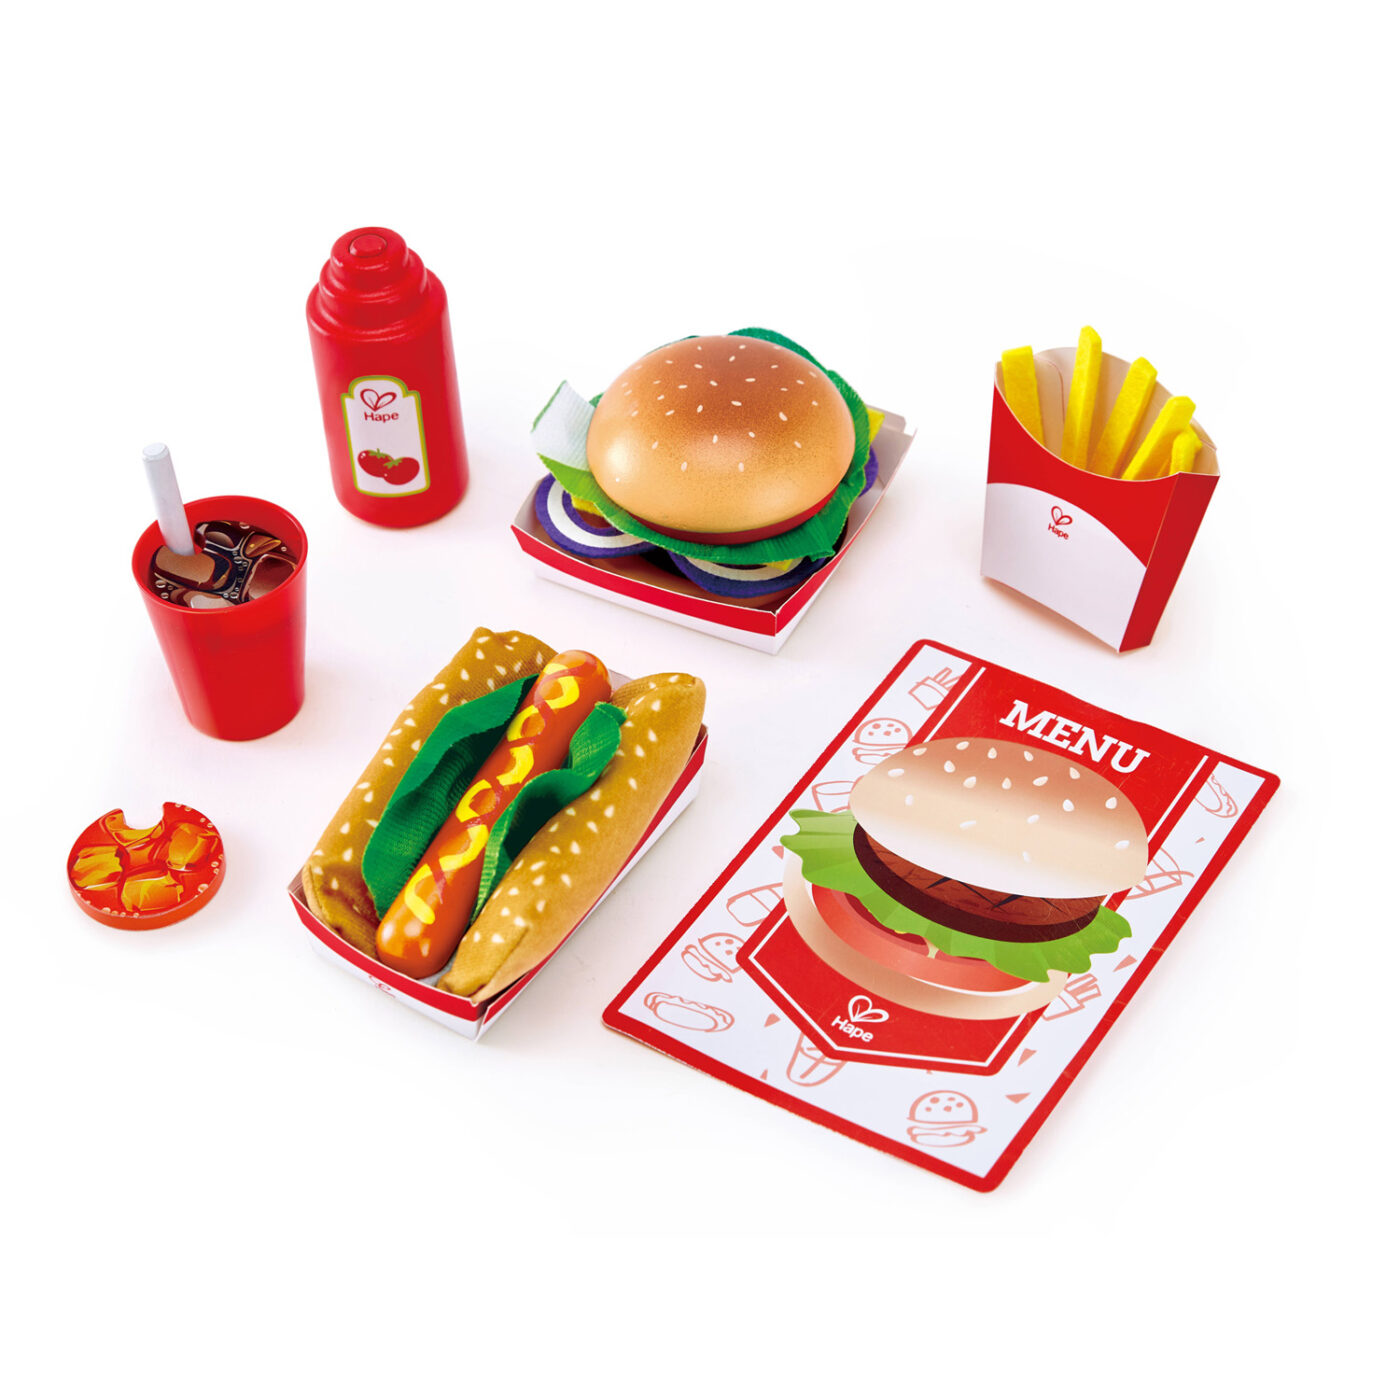 ハンバーガー&ホットドックセットの商品画像